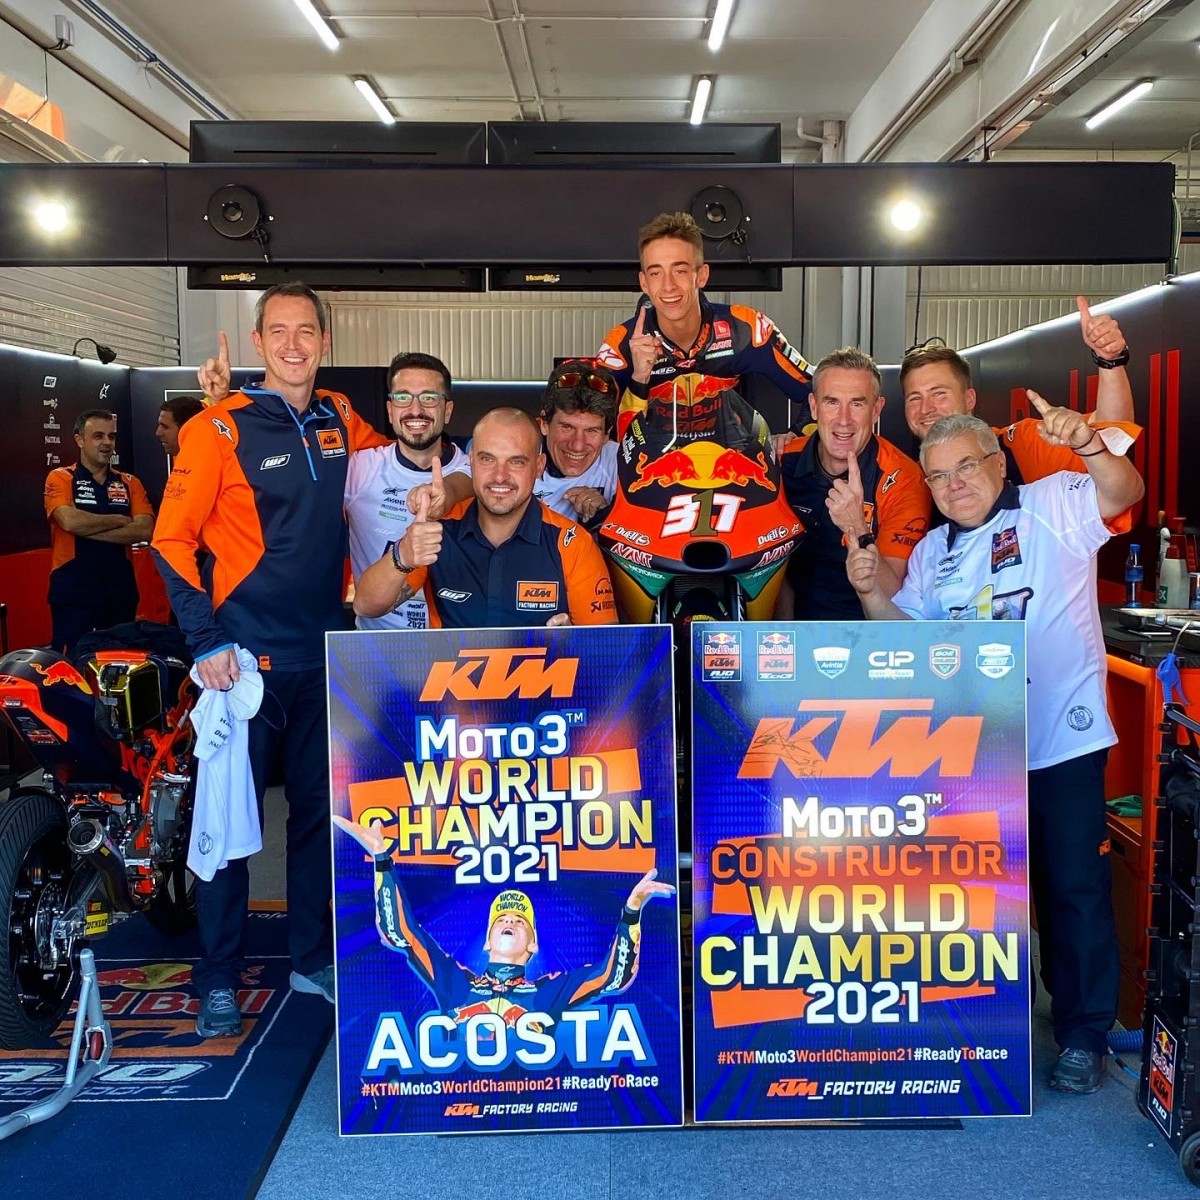 Педро Акоста - новый вундеркинд Мото Гран-При: взял победу в чемпионате Moto3 с первой попытки с KTM Factory Racing